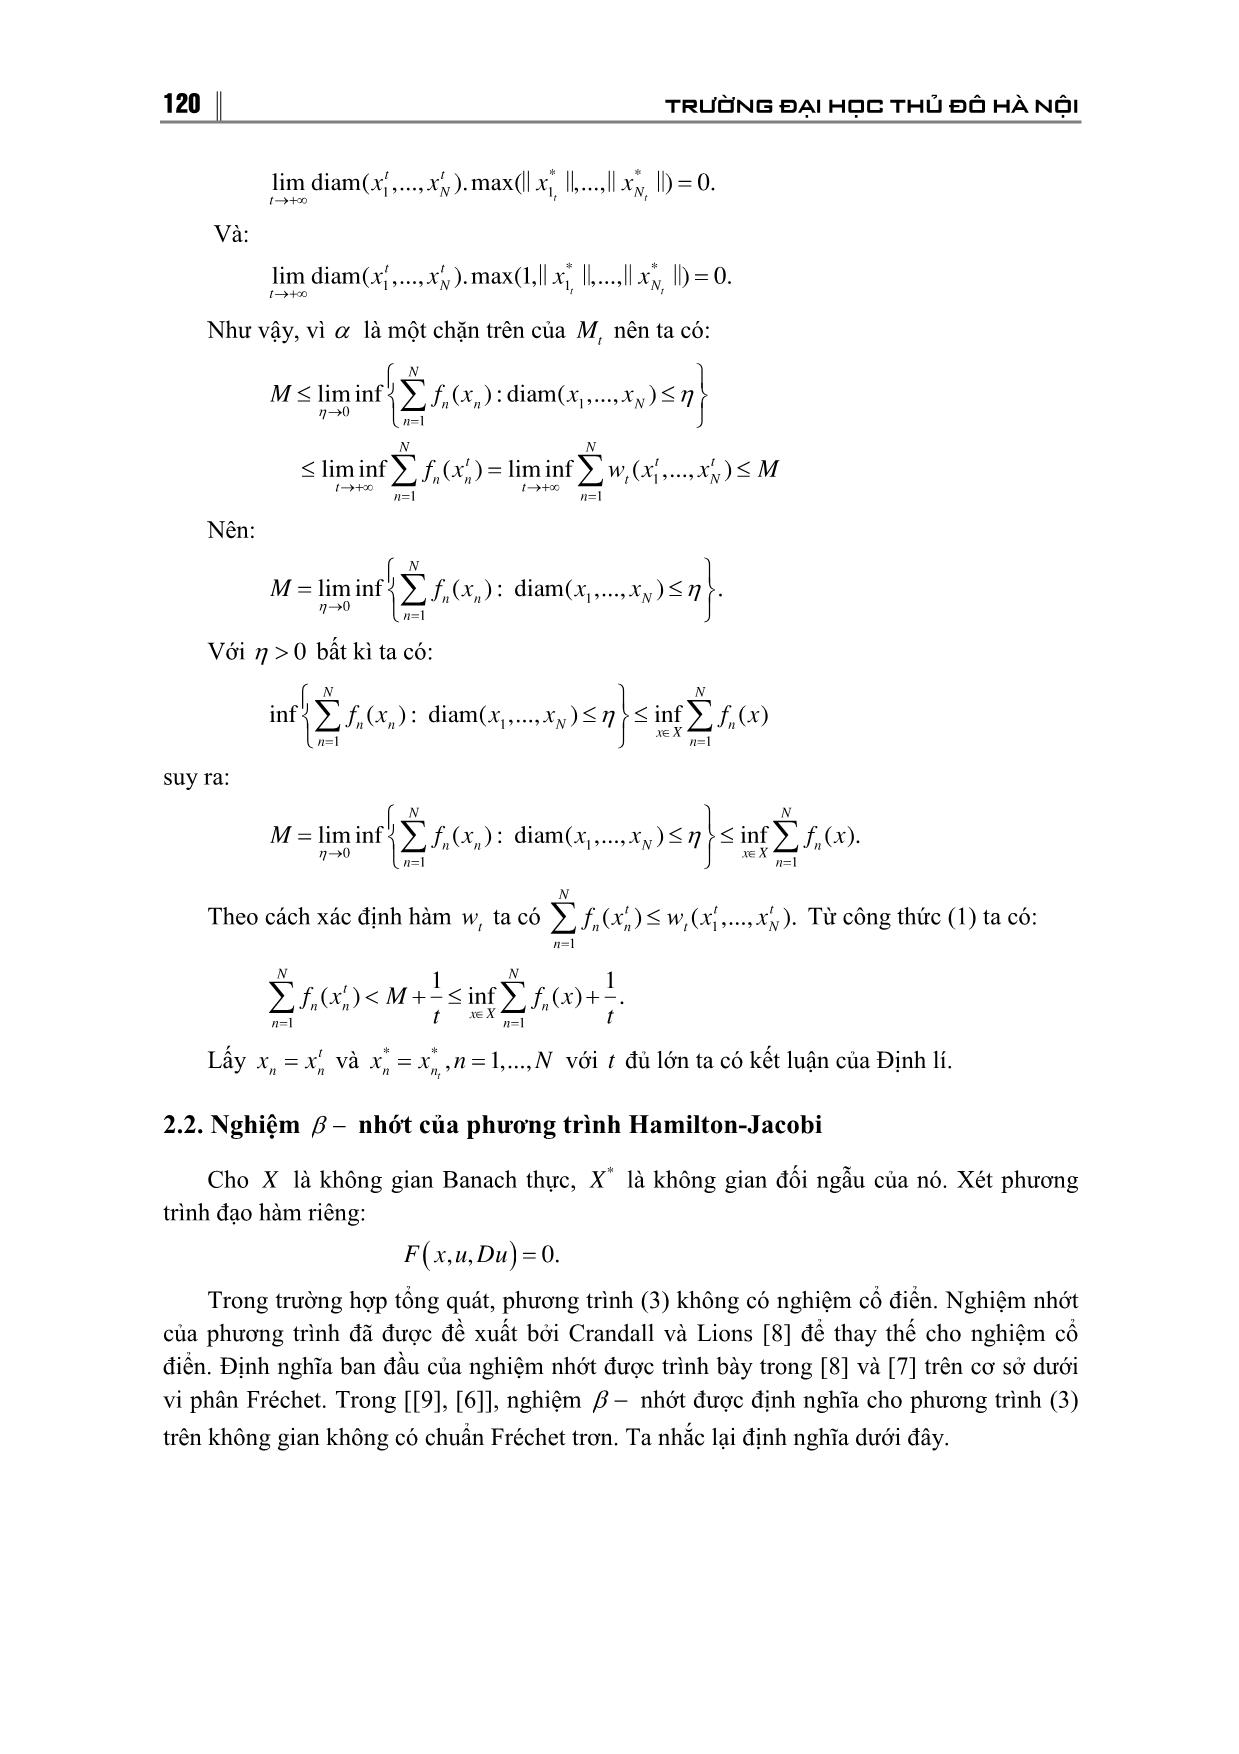 Tính duy nhất nghiệm của β - Nhớt của phương trình Hamilton-Jacobi trong không gian Banach trang 6